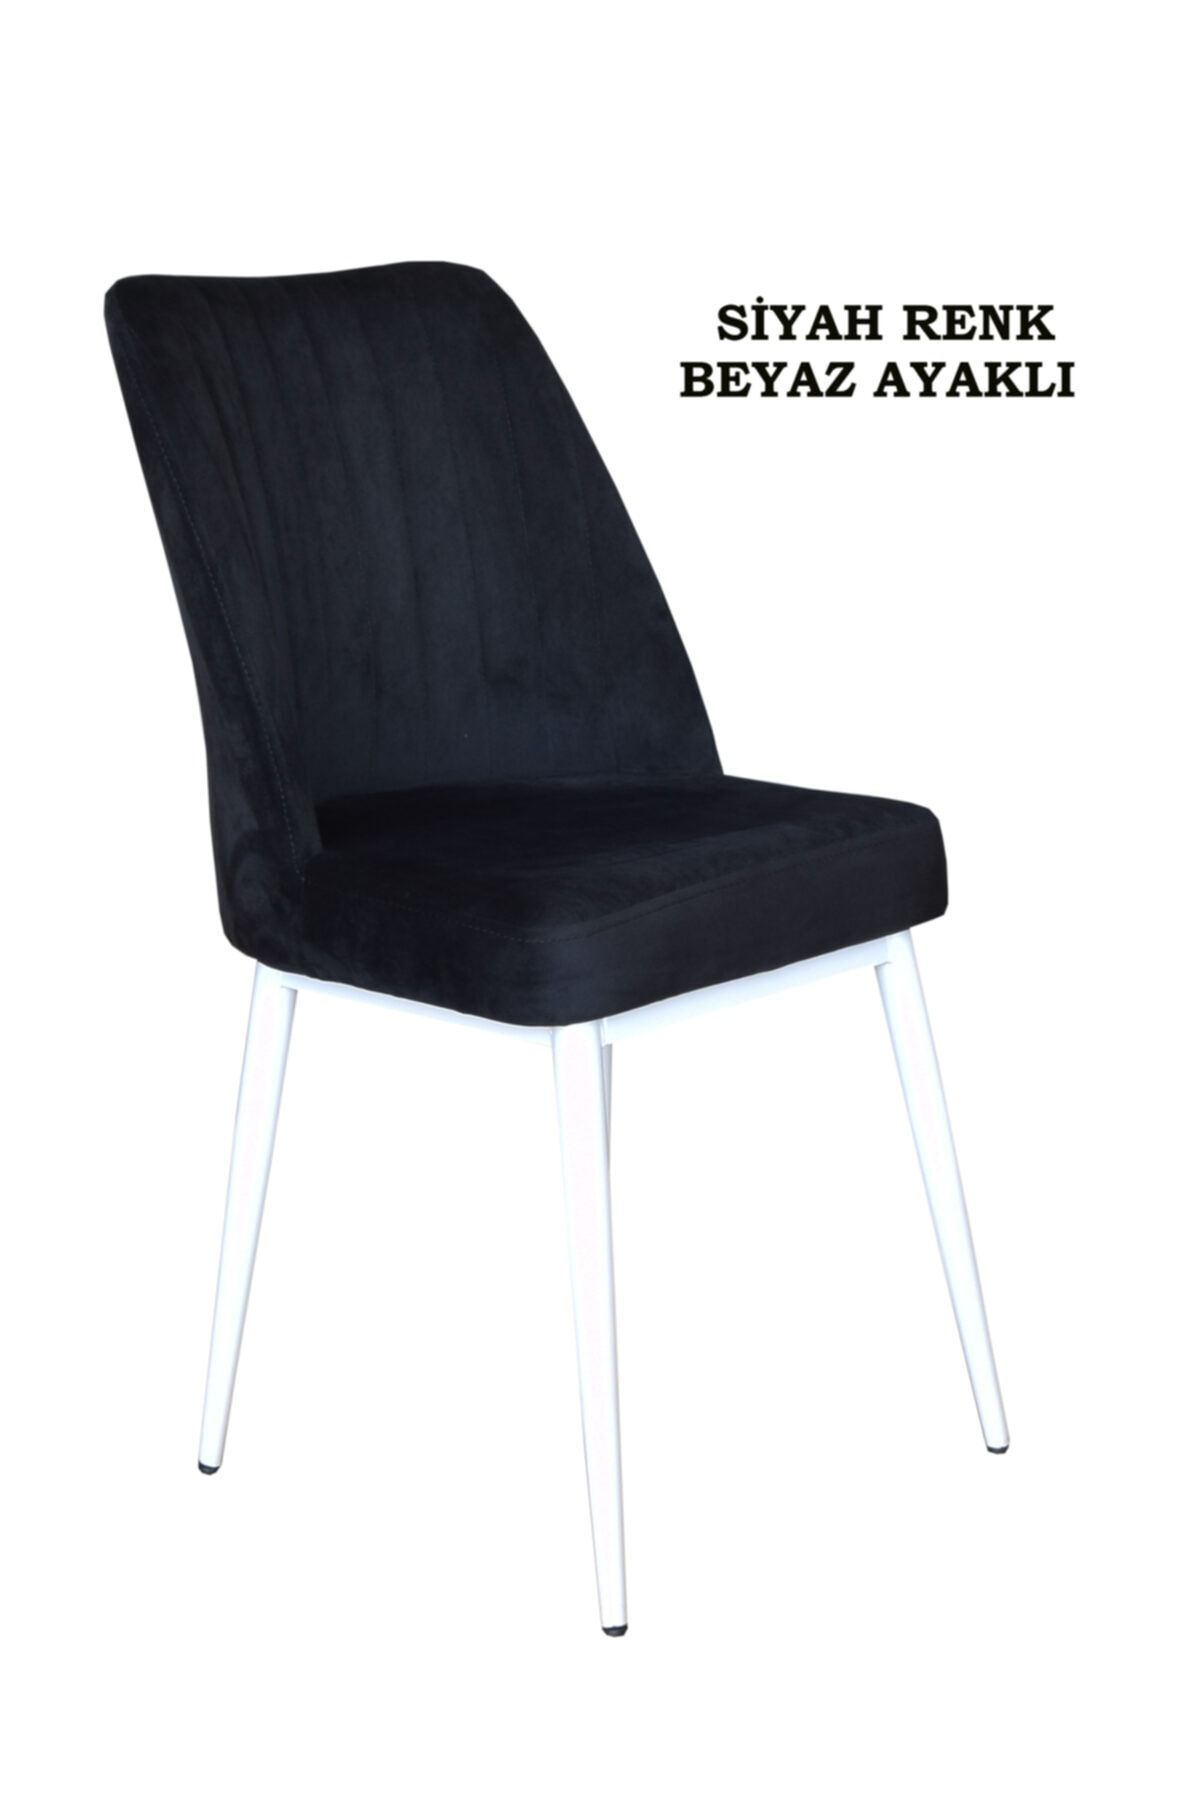 Ankhira Elit Sandalye, Mutfak Ve Salon Sandalyesi, Silinebilir Siyah Renk Kumaş, Beyaz Ayaklı